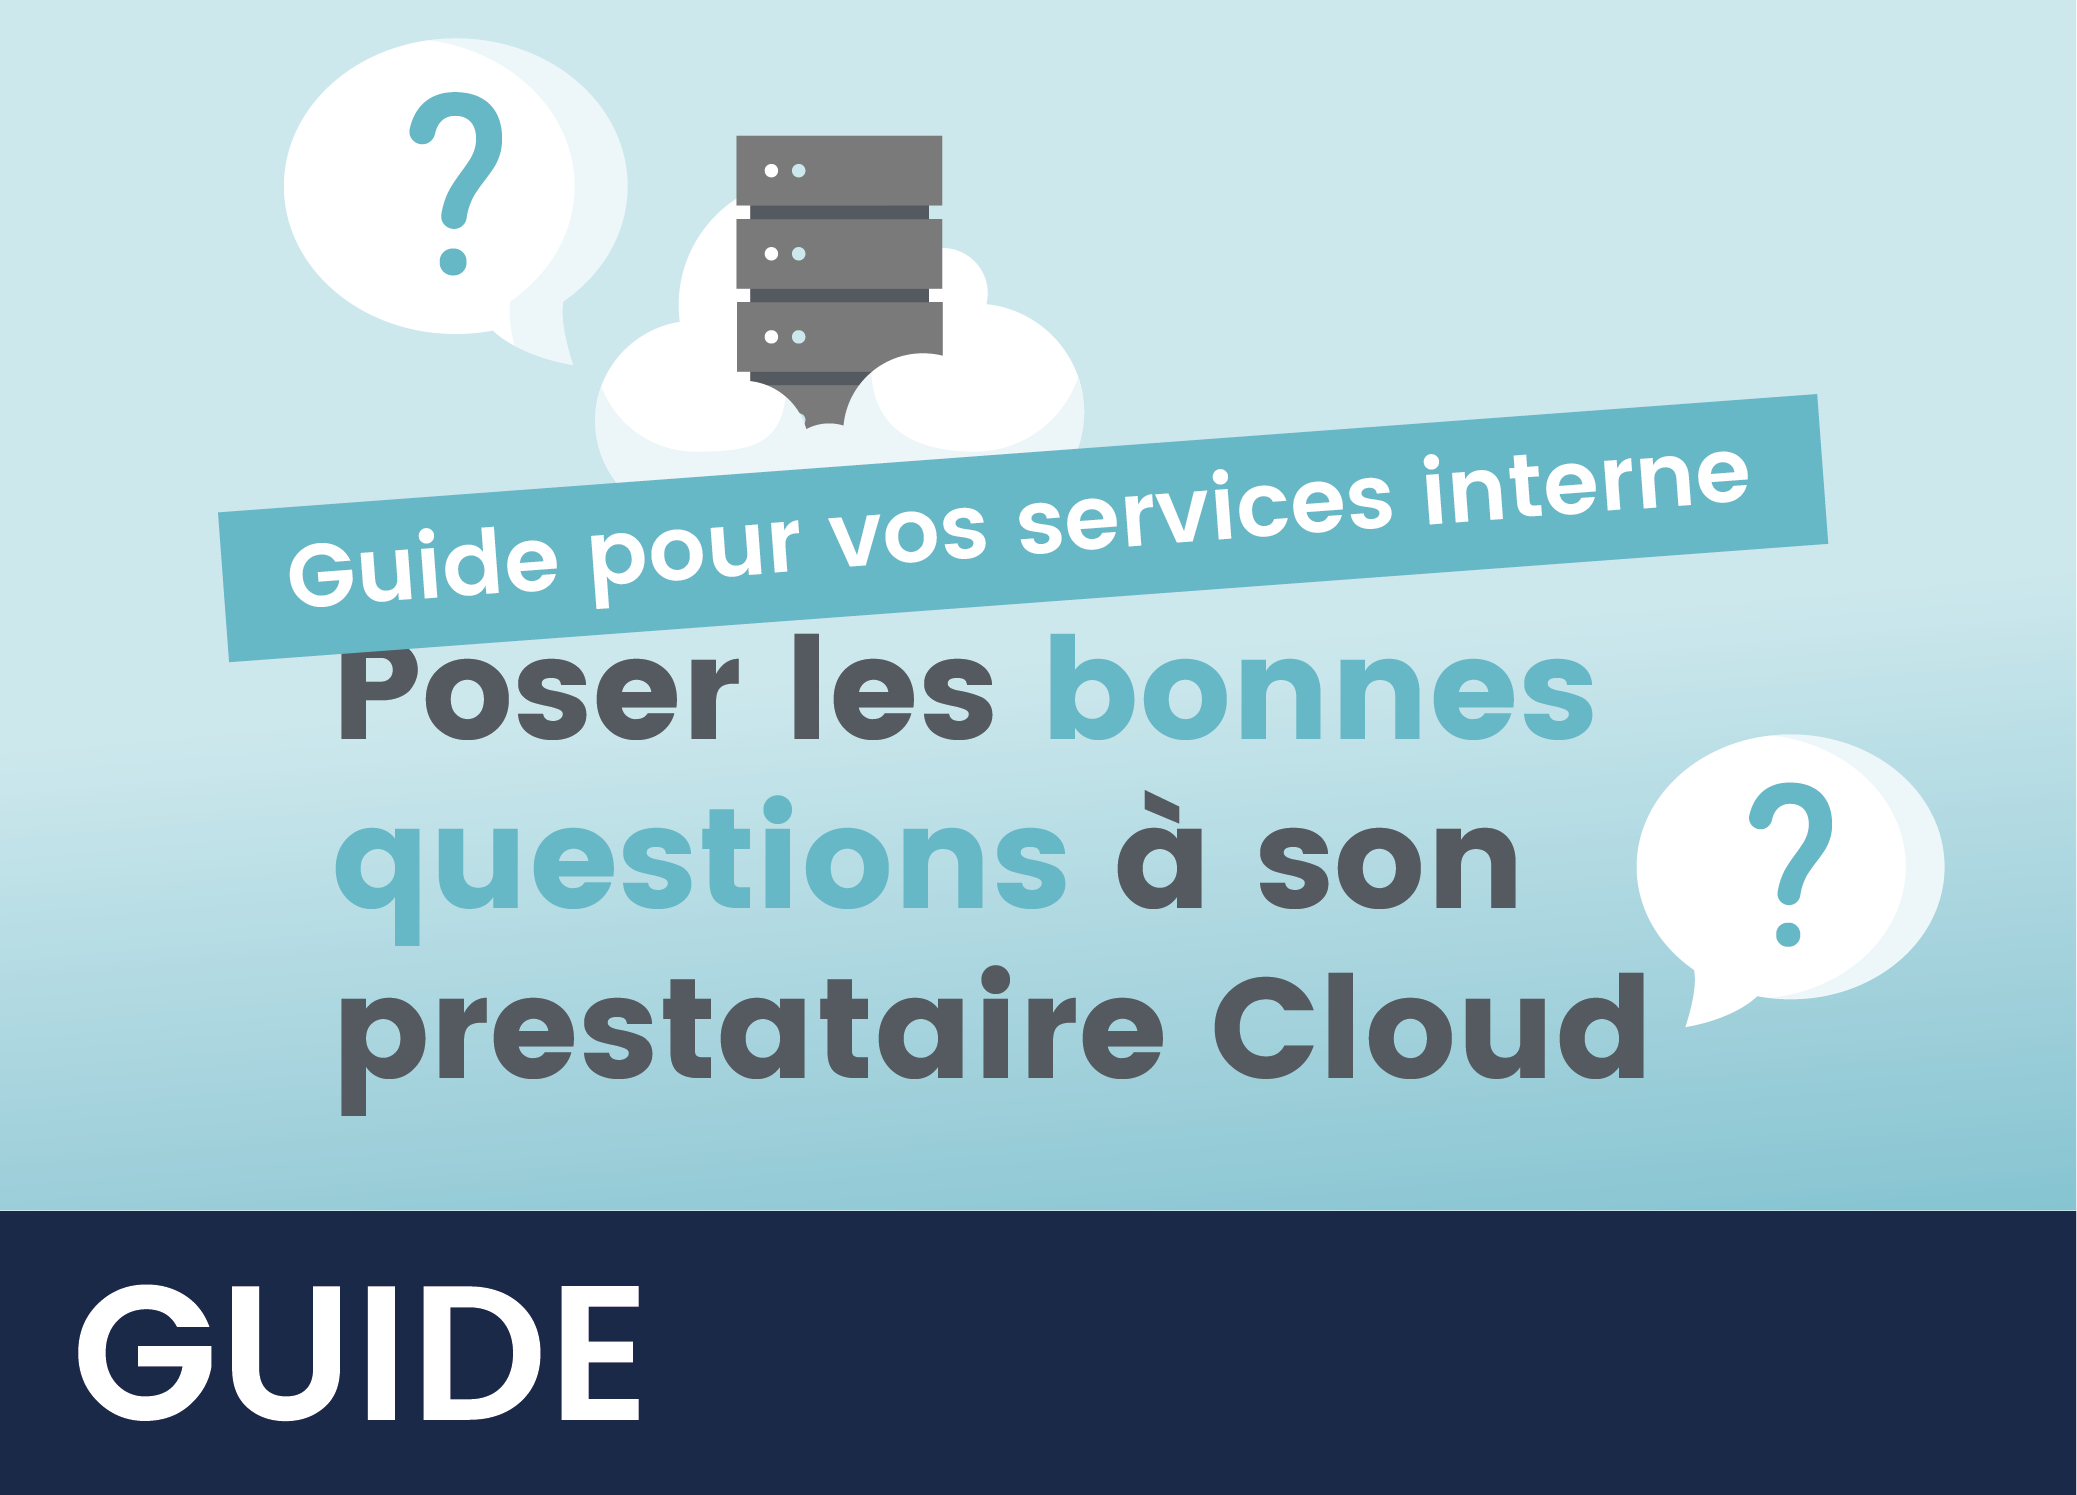 Illustration gallery guide poser les bonnes questions prestataire Cloud